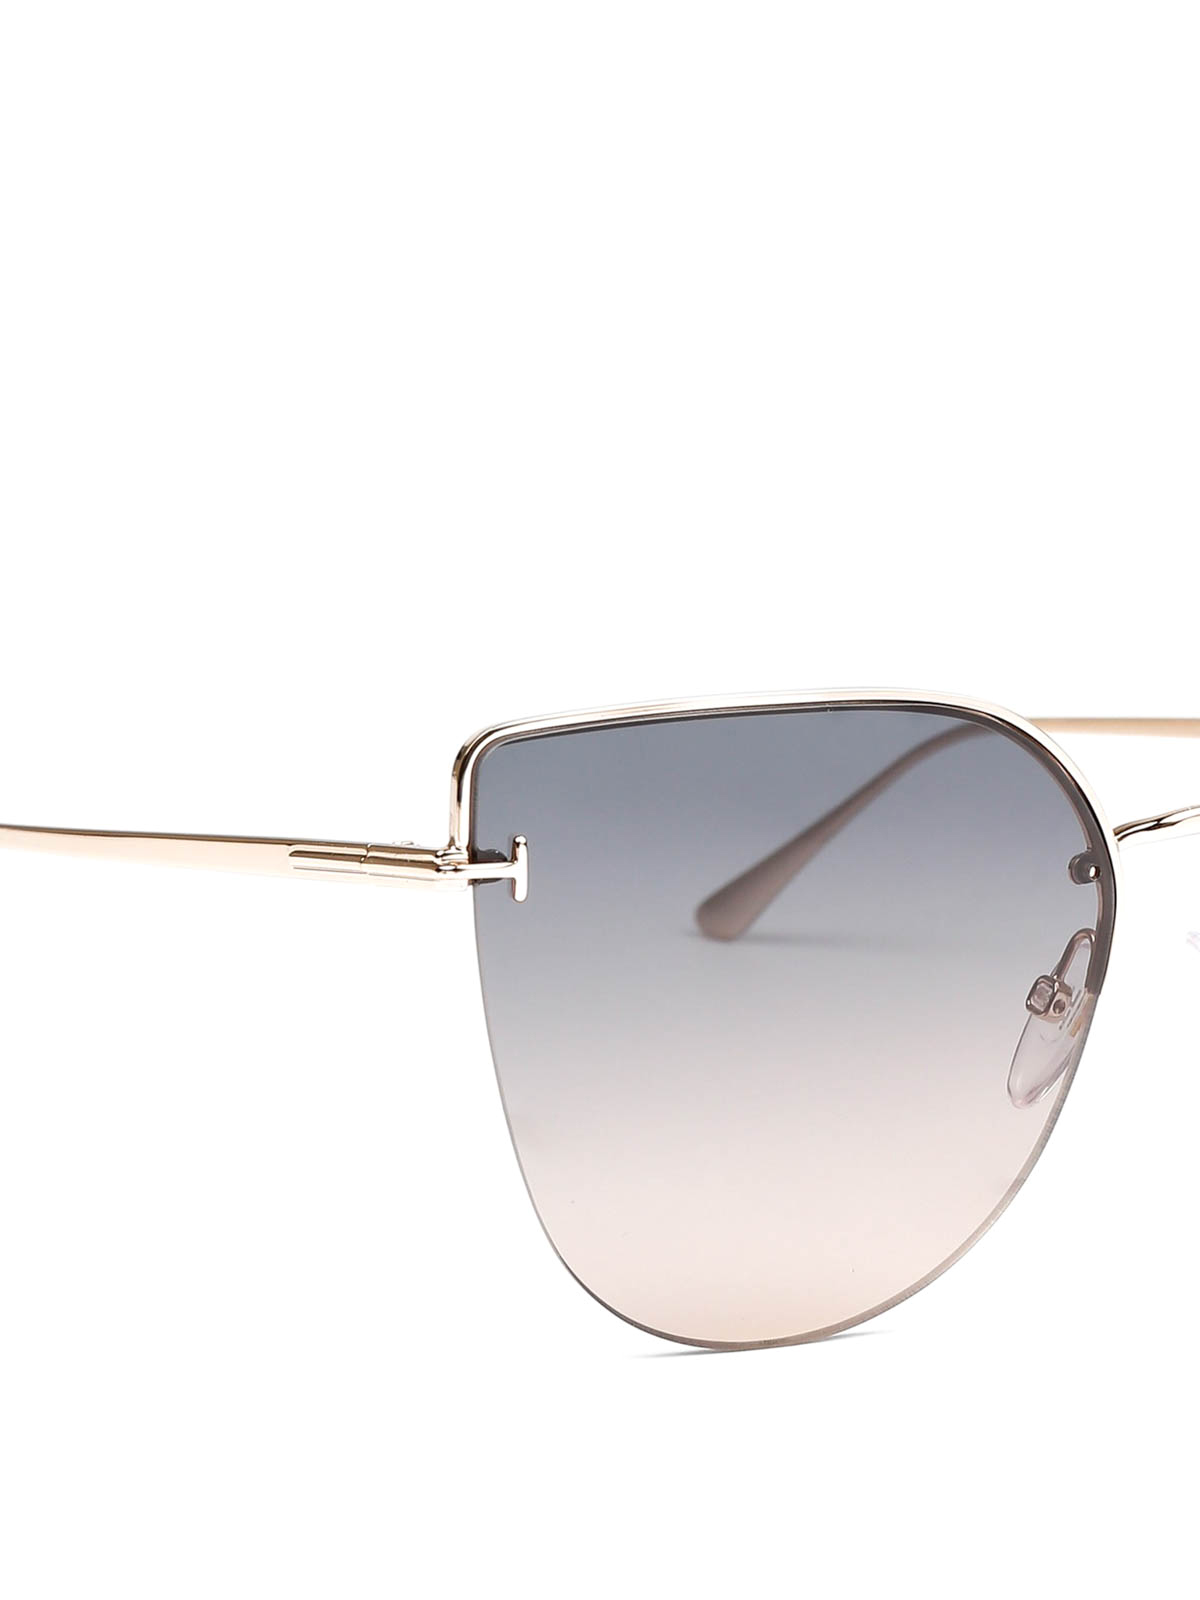 Sunglasses Tom Ford - sunglasses - | Shop online iKRIX